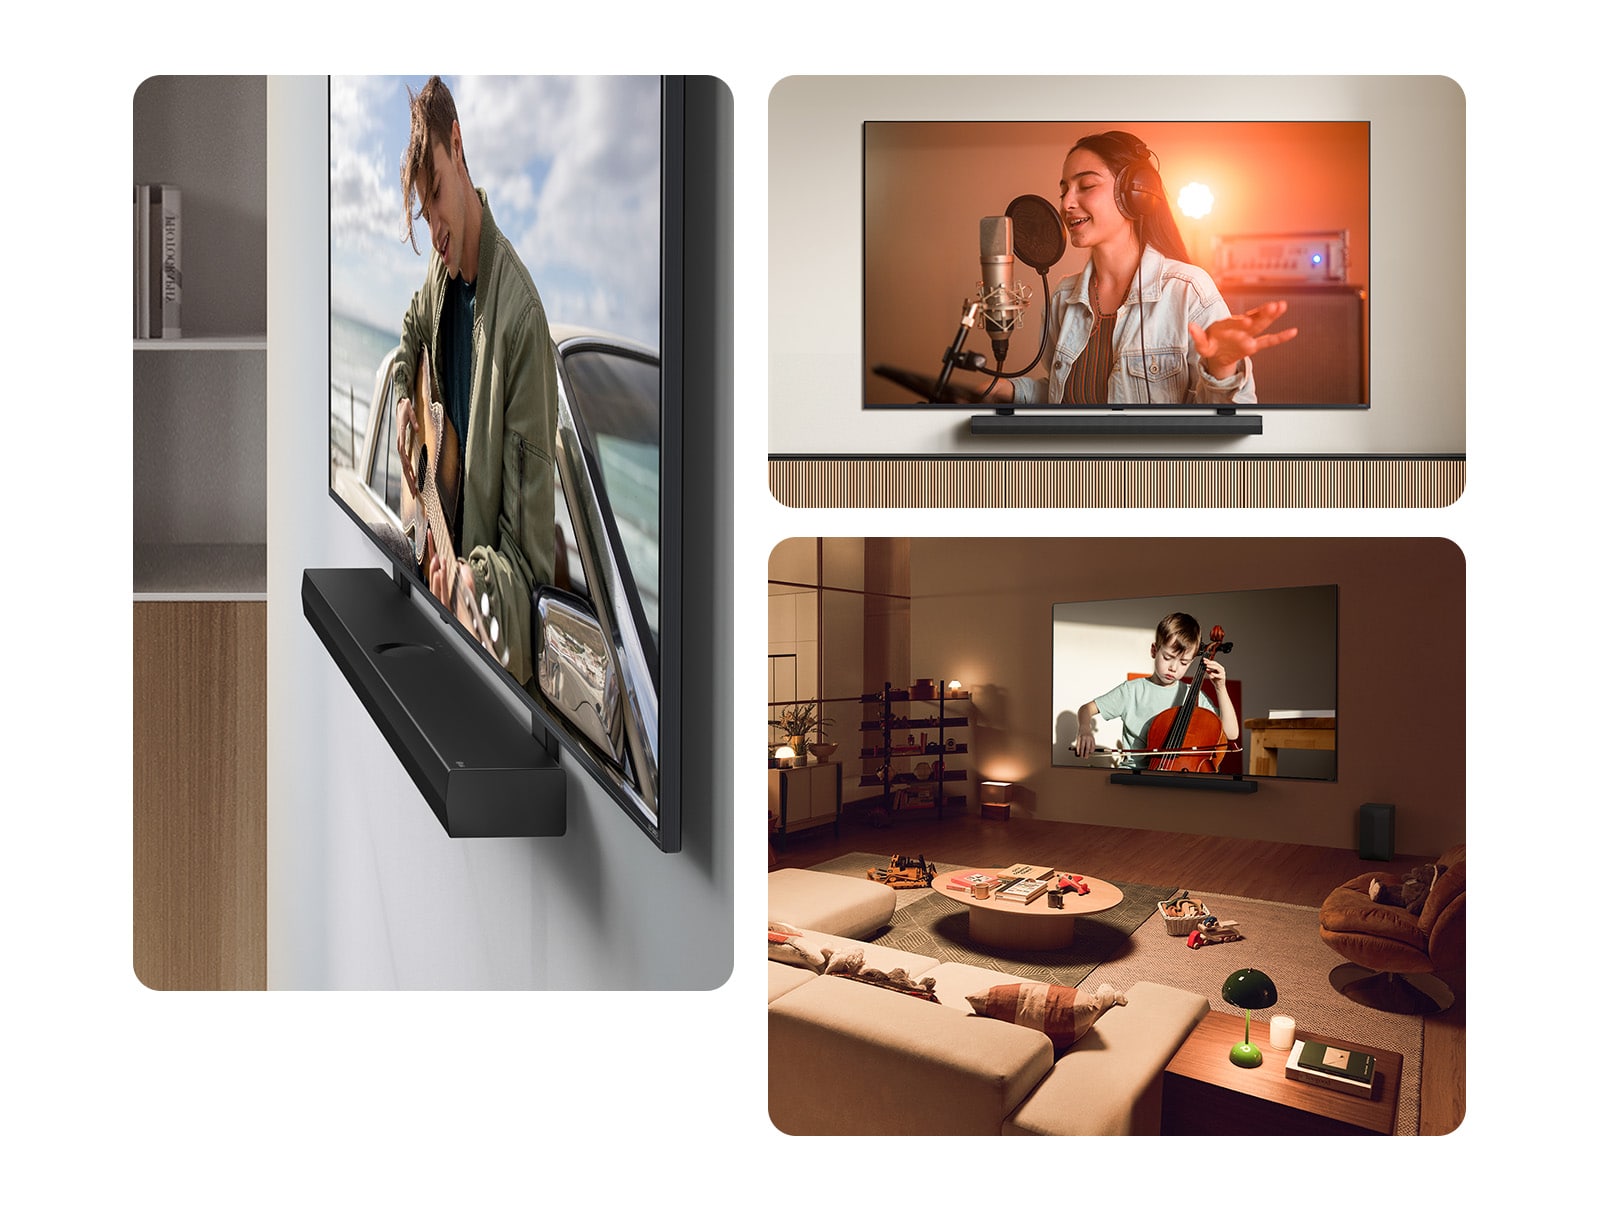 Die LG Soundbar und der LG QNED Fernseher an der Wand mit der passenden QNED-Halterung in einem grauen und hölzernen Wohnraum in schräger Perspektive, wobei auf dem LG QNED Fernseher ein Gitarre spielender Mann zu sehen ist.  LG Soundbar und LG QNED Fernseher vor einer cremefarbenen Wand mit der passenden QNED-Fernsehhalterung. Der Fernseher zeigt ein Video, in dem eine Frau in einem Aufnahmestudio singt. Unter dem Fernseher befindet sich ein moderner geometrischer Holzständer.   LG Soundbar und LG QNED Fernseher an einer Wand mit der passenden QNED-Fernsehhalterung in einem gemütlichen und schwach beleuchteten Wohnraum mit Kinderspielzeug. Auf dem Fernseher läuft ein Video, in dem ein kleiner Junge Cello spielt. 